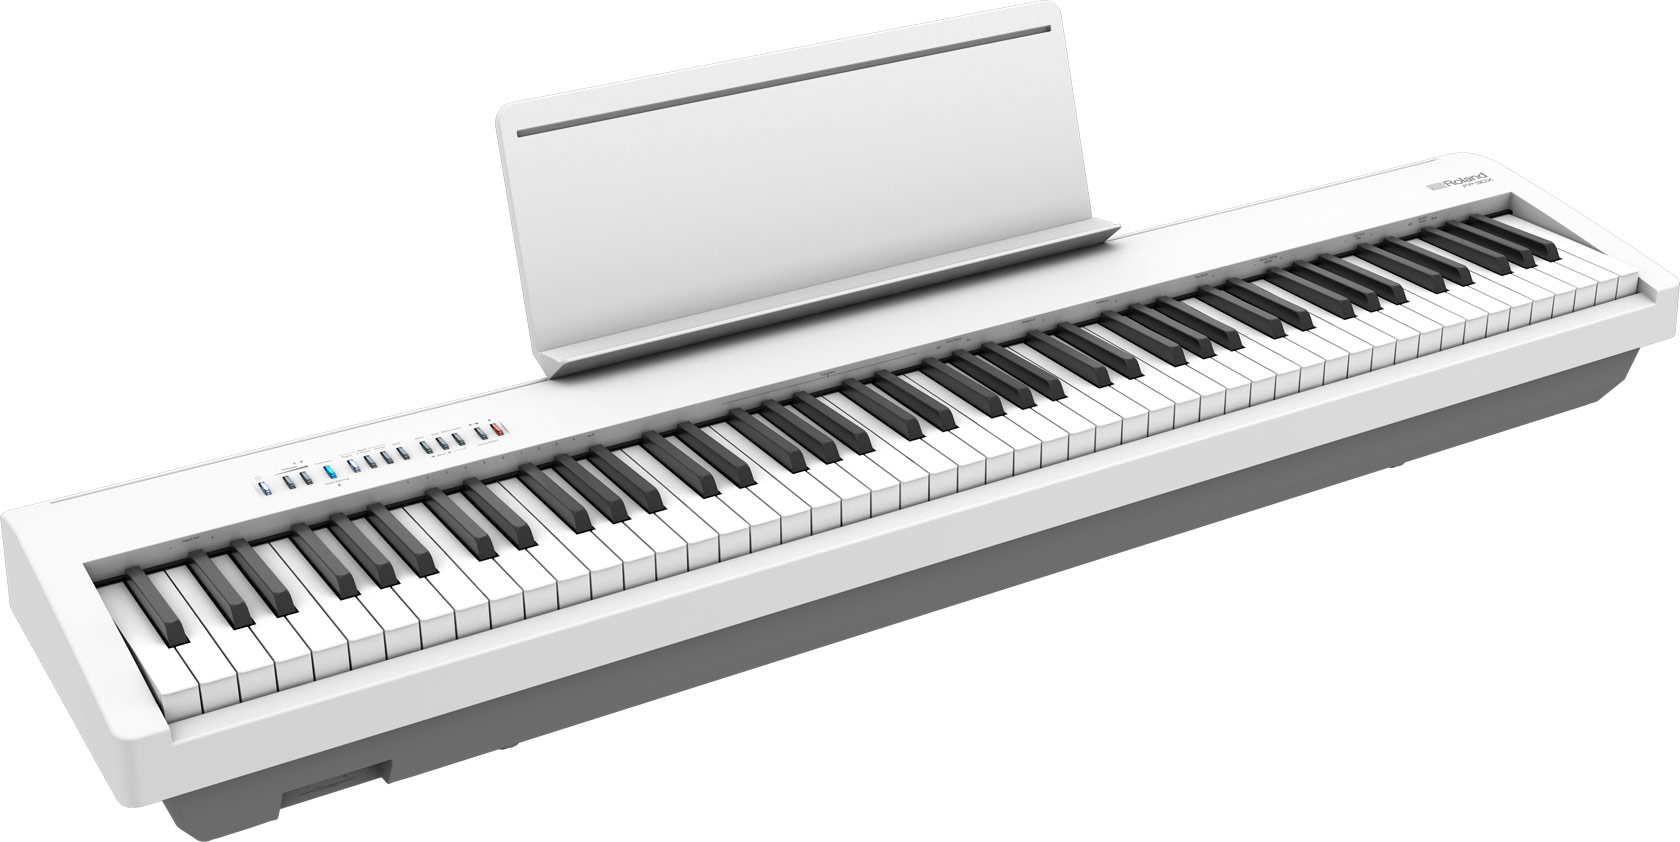 ROLAND FP-30X-WH  цифровое фортепиано, 88 кл. PHA-4 Standard, 56 тембров, 256 полиф., (цвет белый)